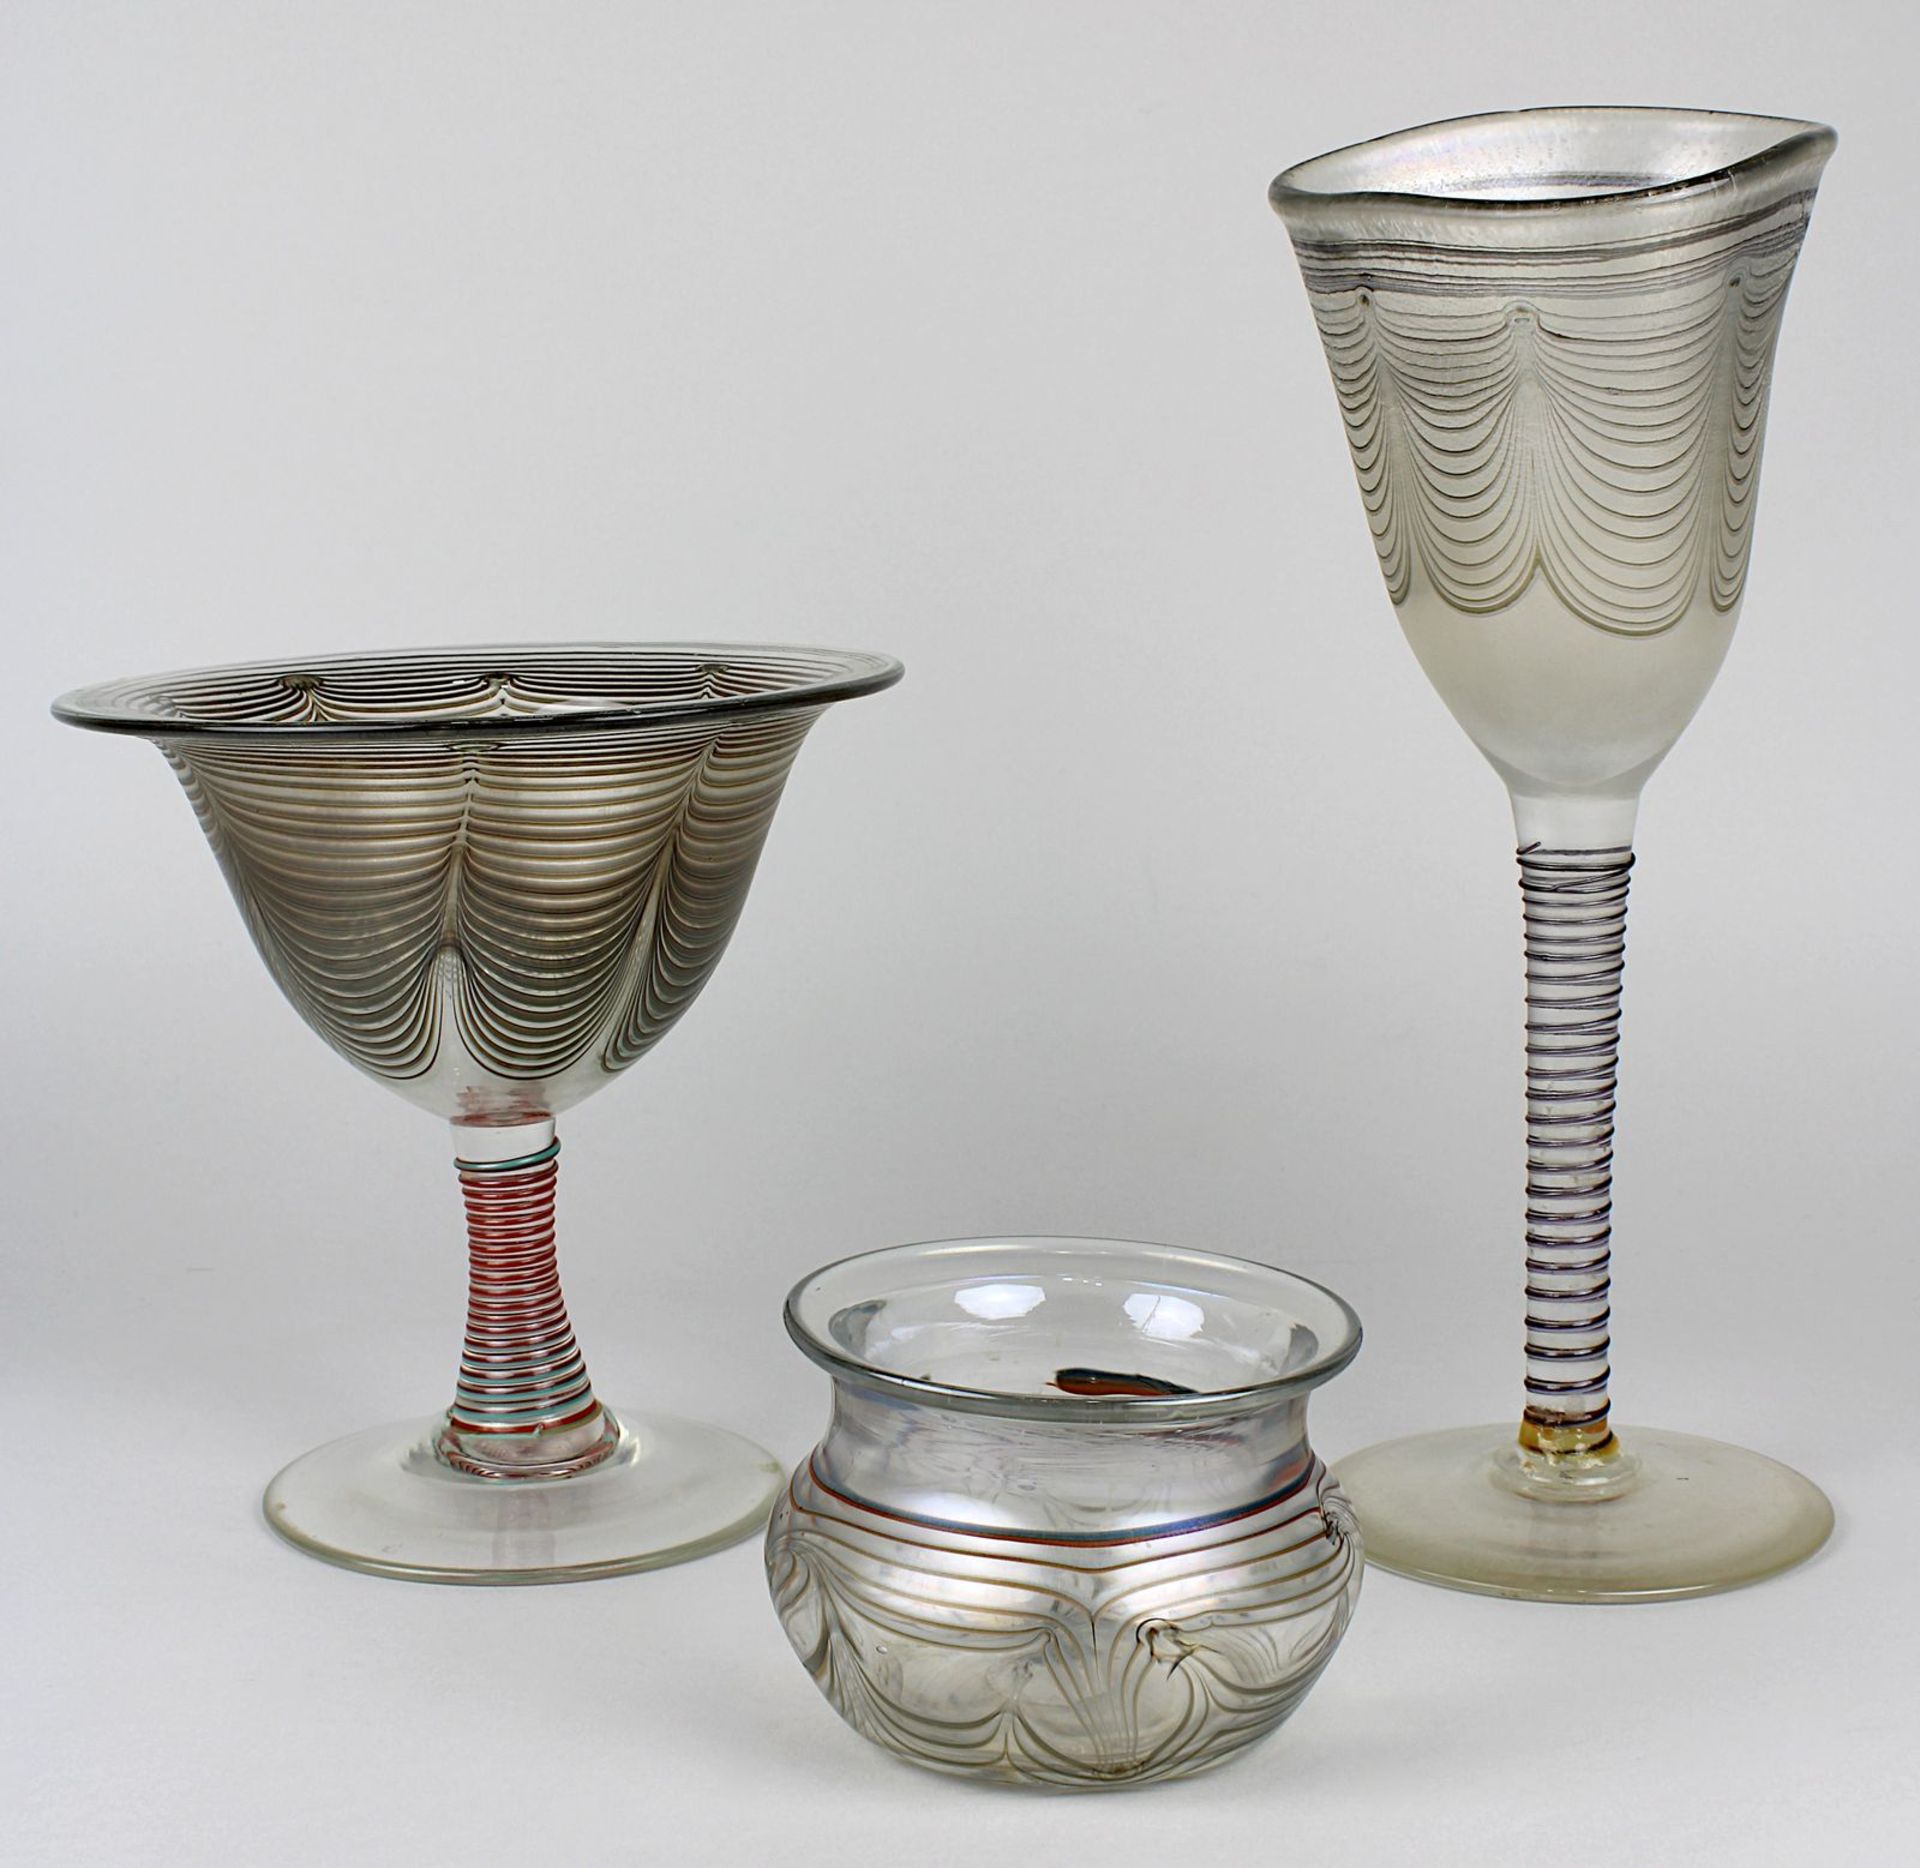 3 Eisch-Glas-Objekte, 1970er/ 80er Jahre, Klarglas mit rotbraun-grau gekämmter Wandung, partiell